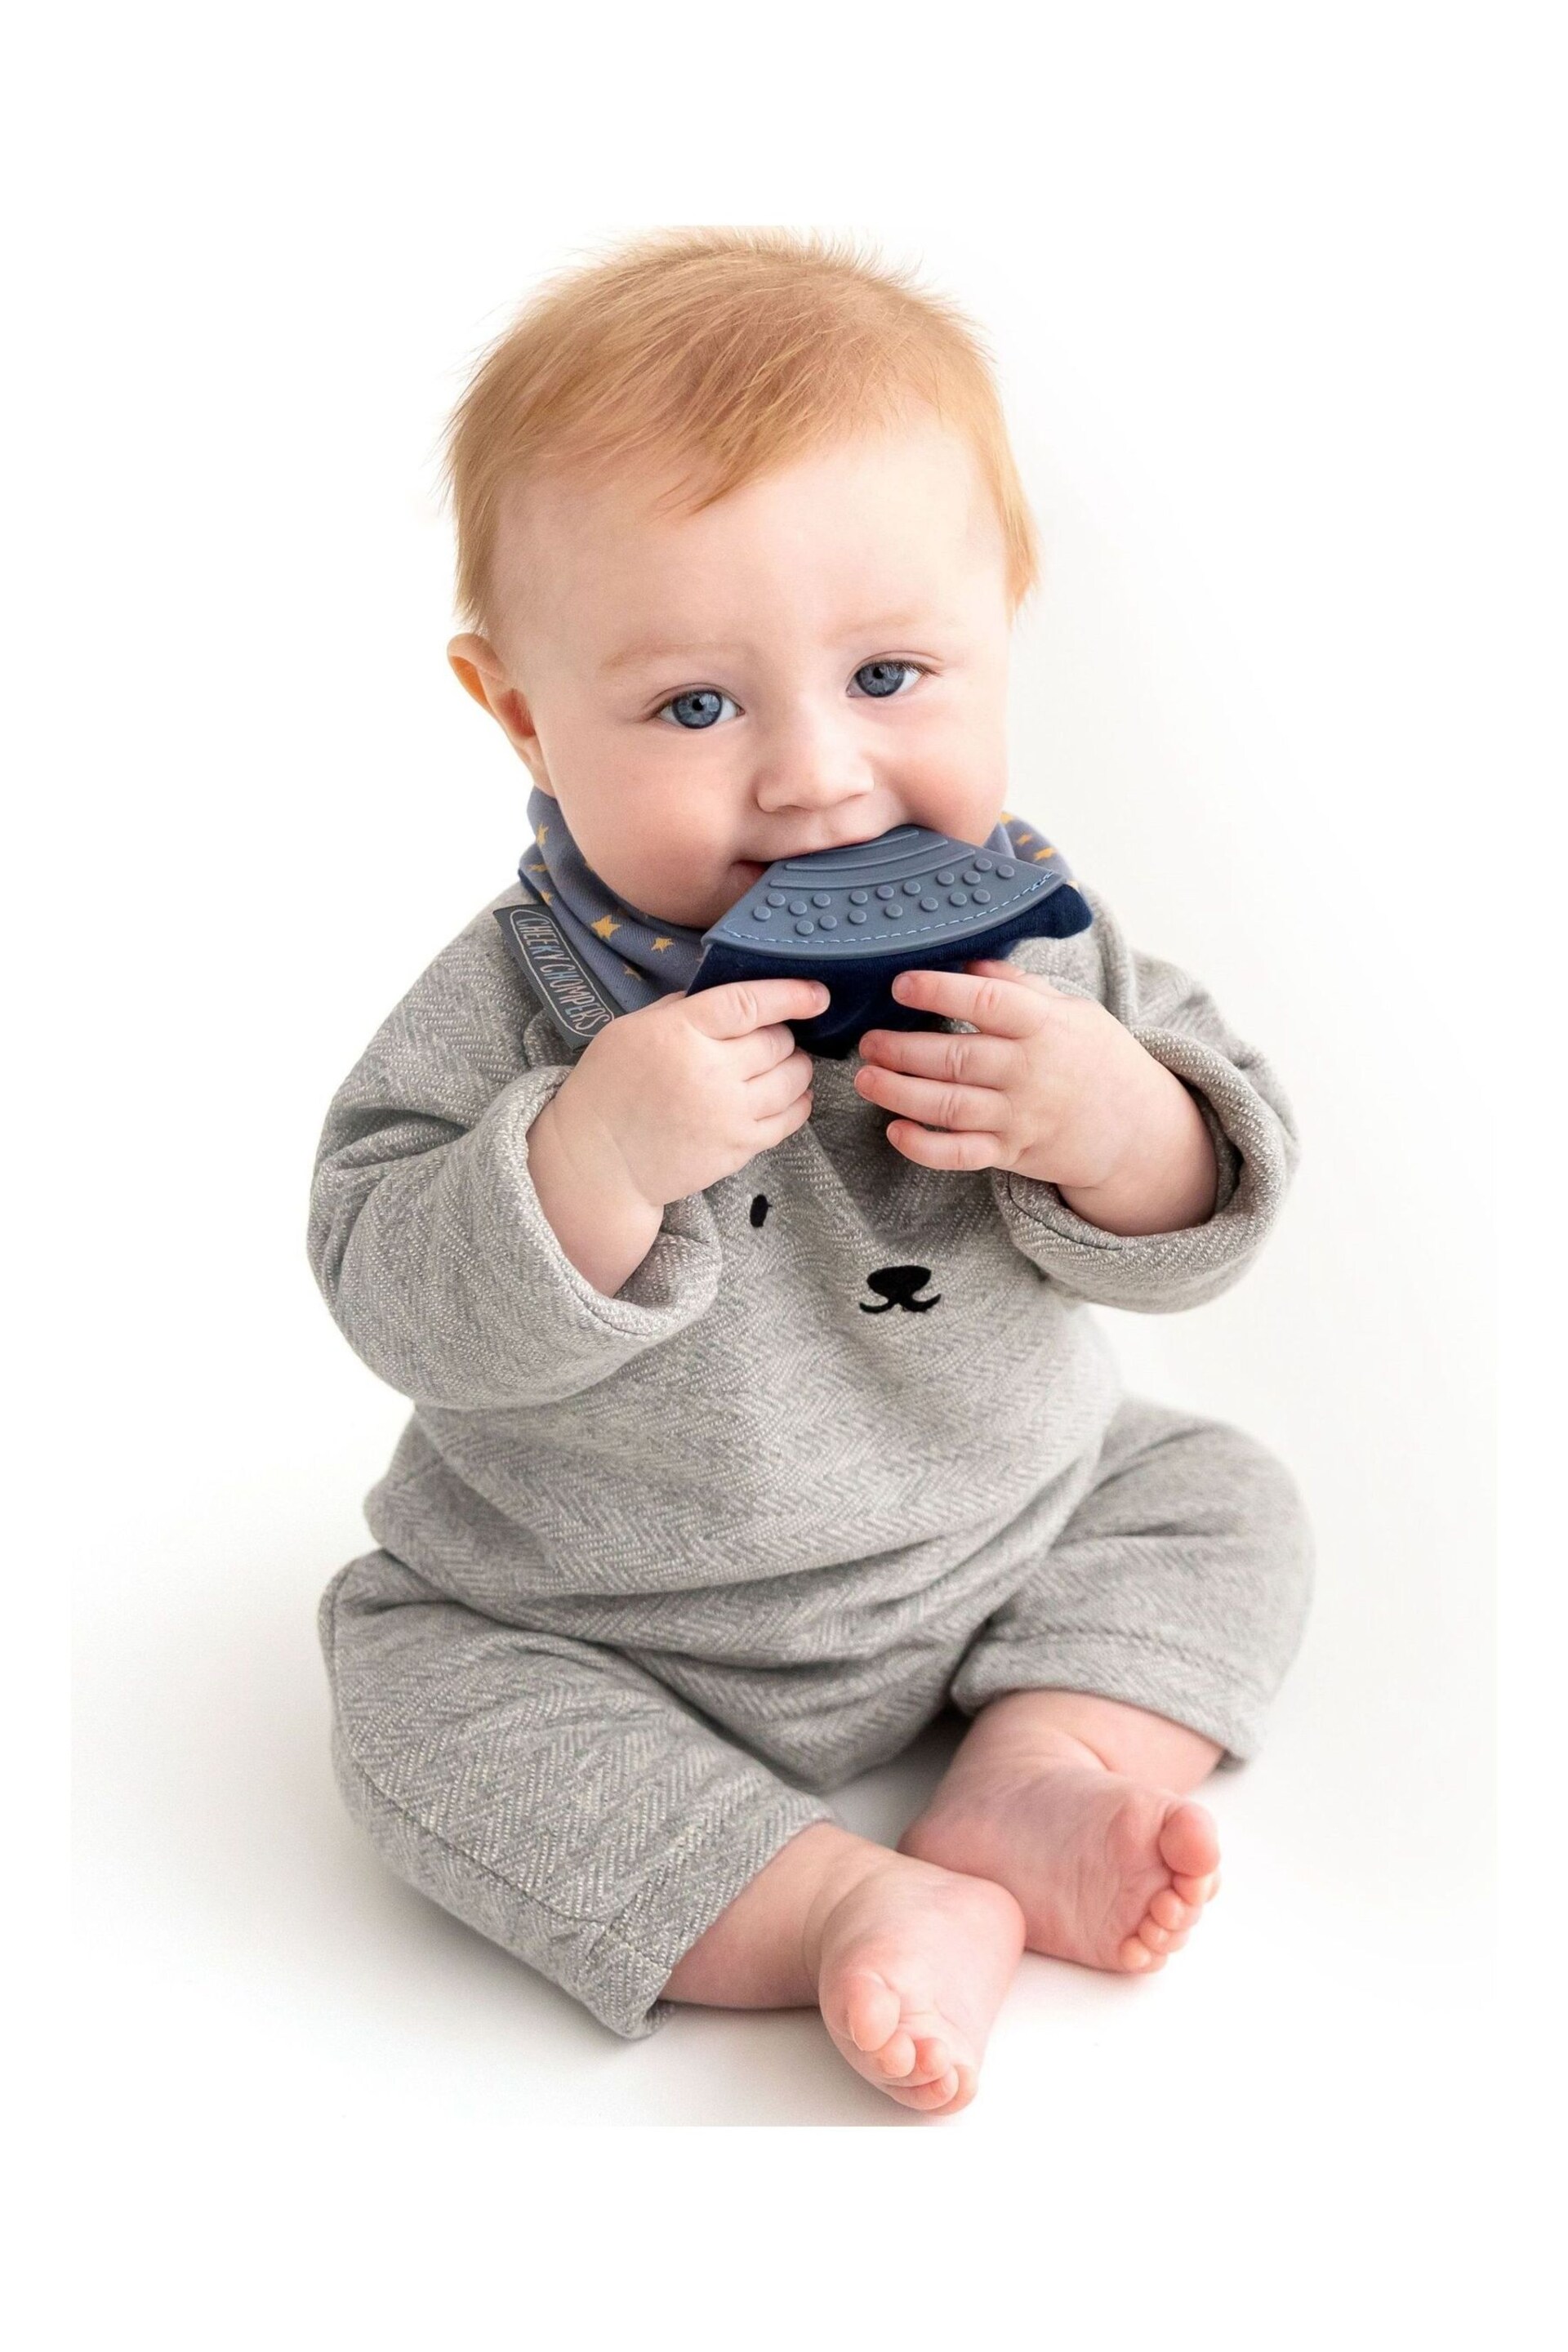 Cheeky Chompers Teething Dribble Baby Bibs 3 Pack - Image 10 of 11